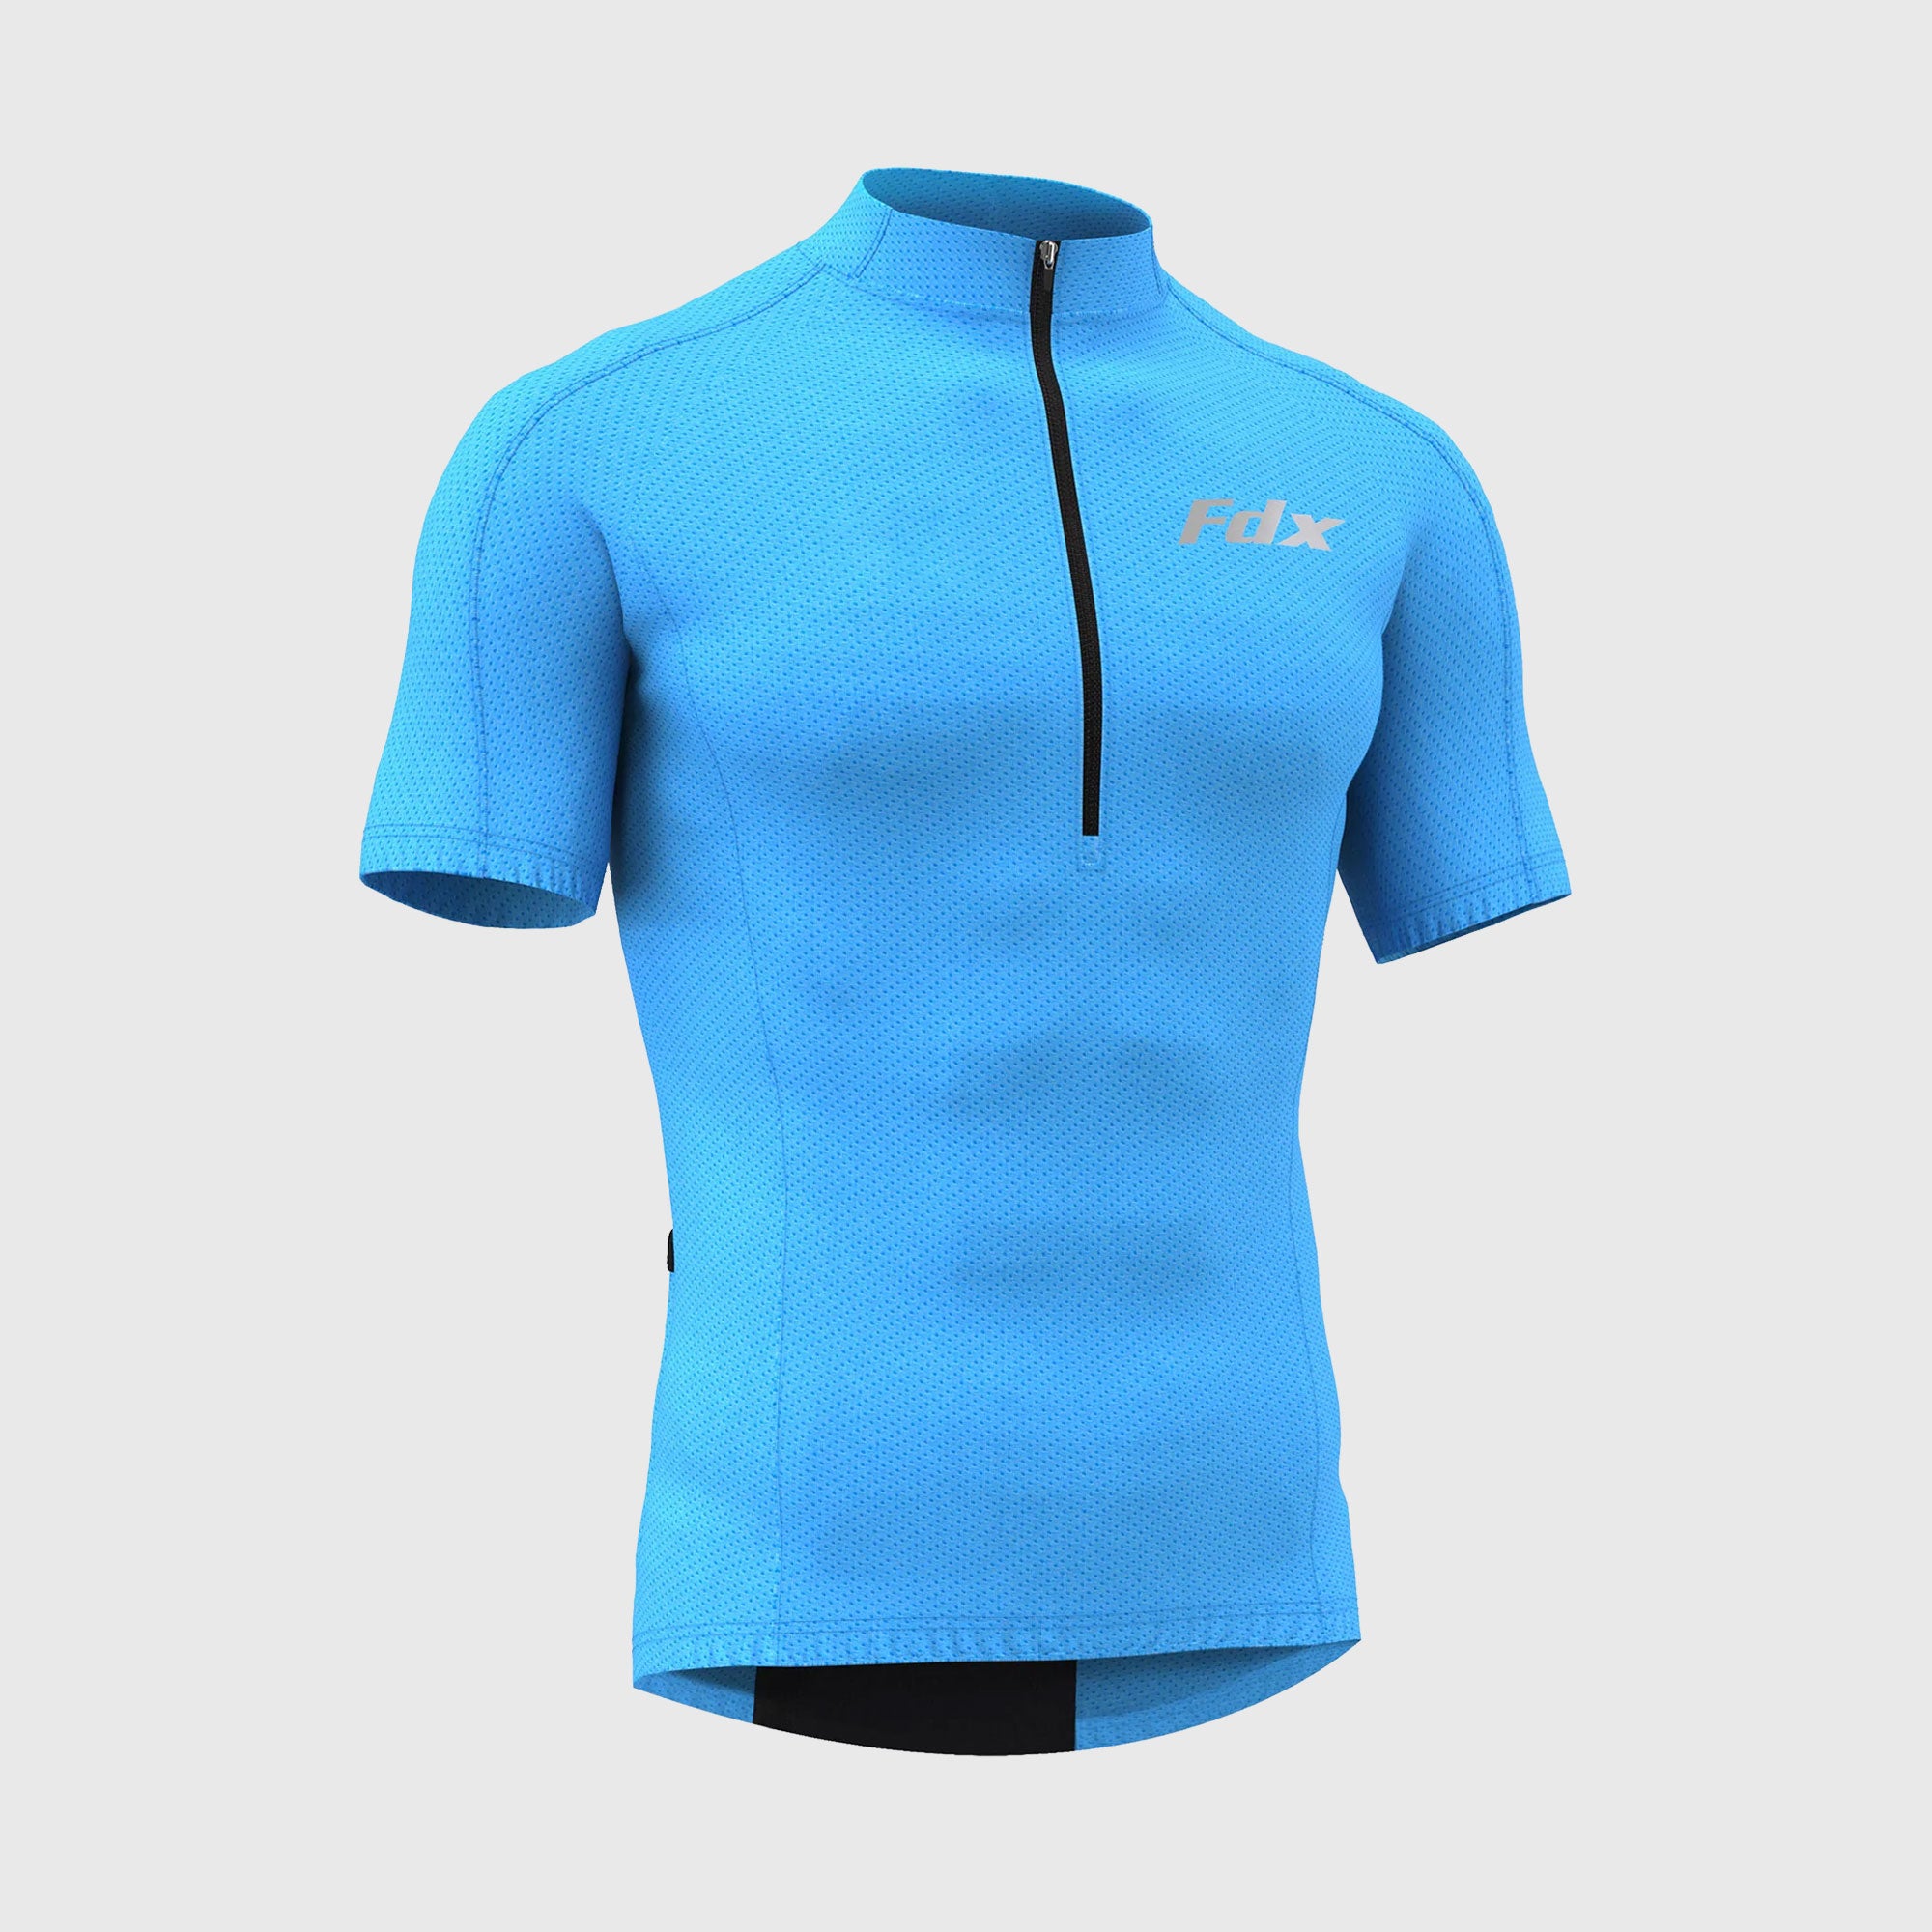 Fdx Pace Blue Men's Short Sleeve Summer Cycling Jersey